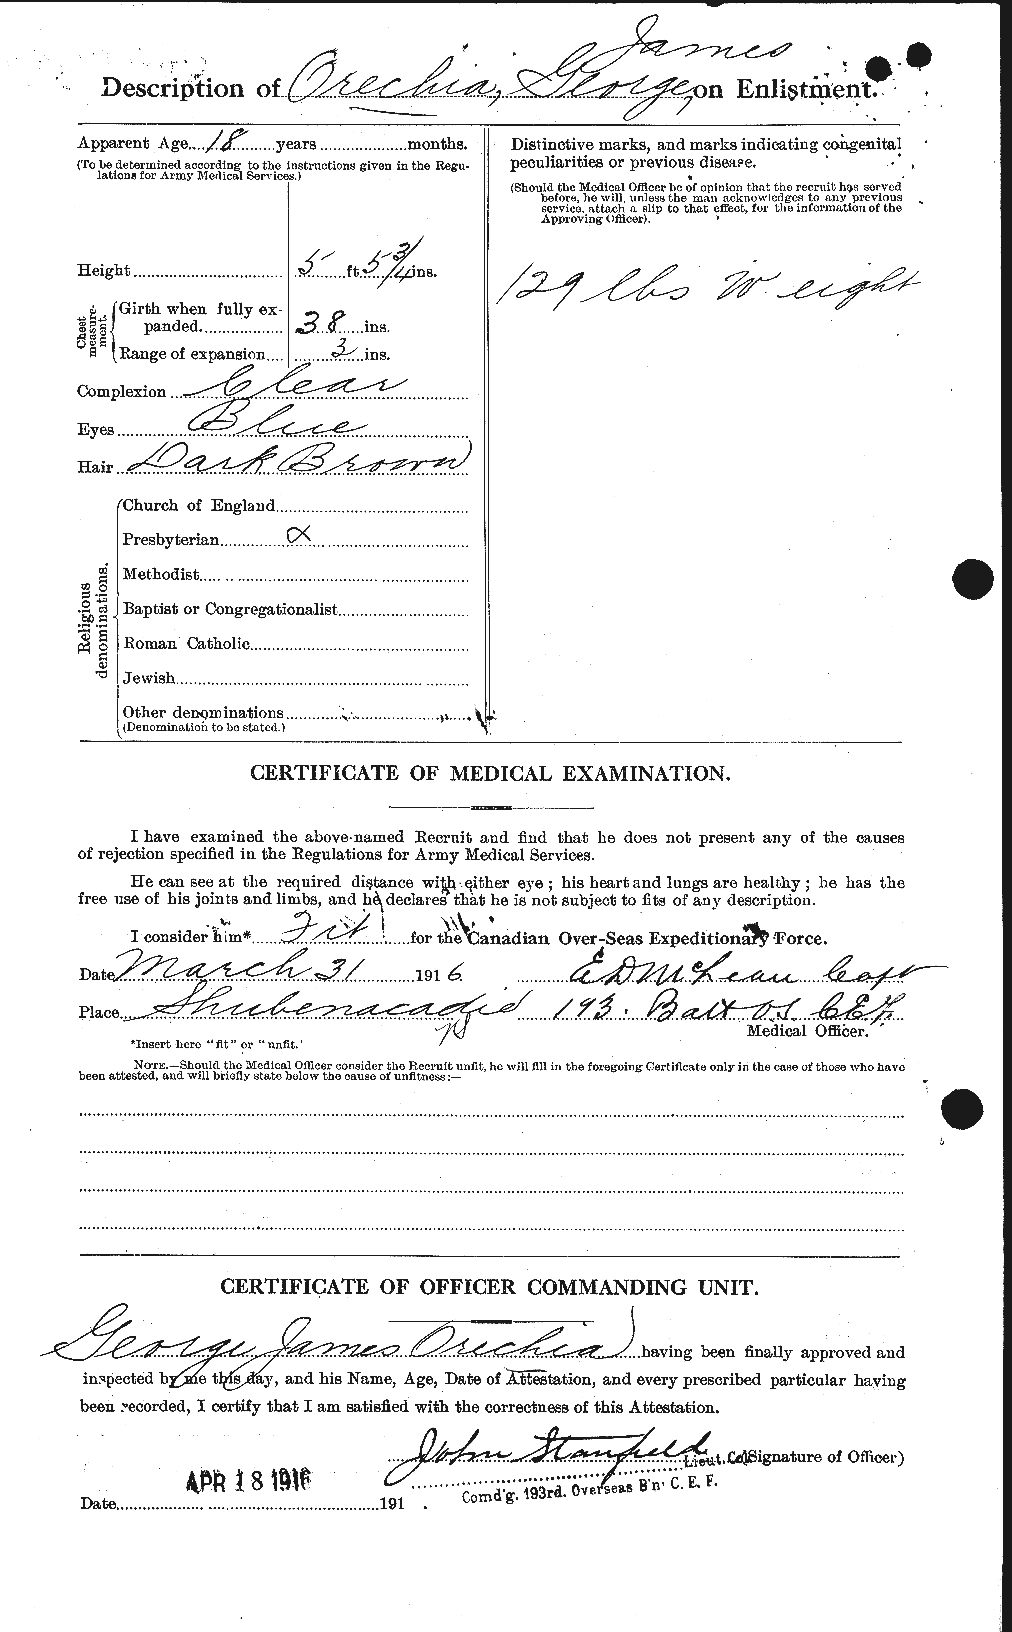 Dossiers du Personnel de la Première Guerre mondiale - CEC 559438b